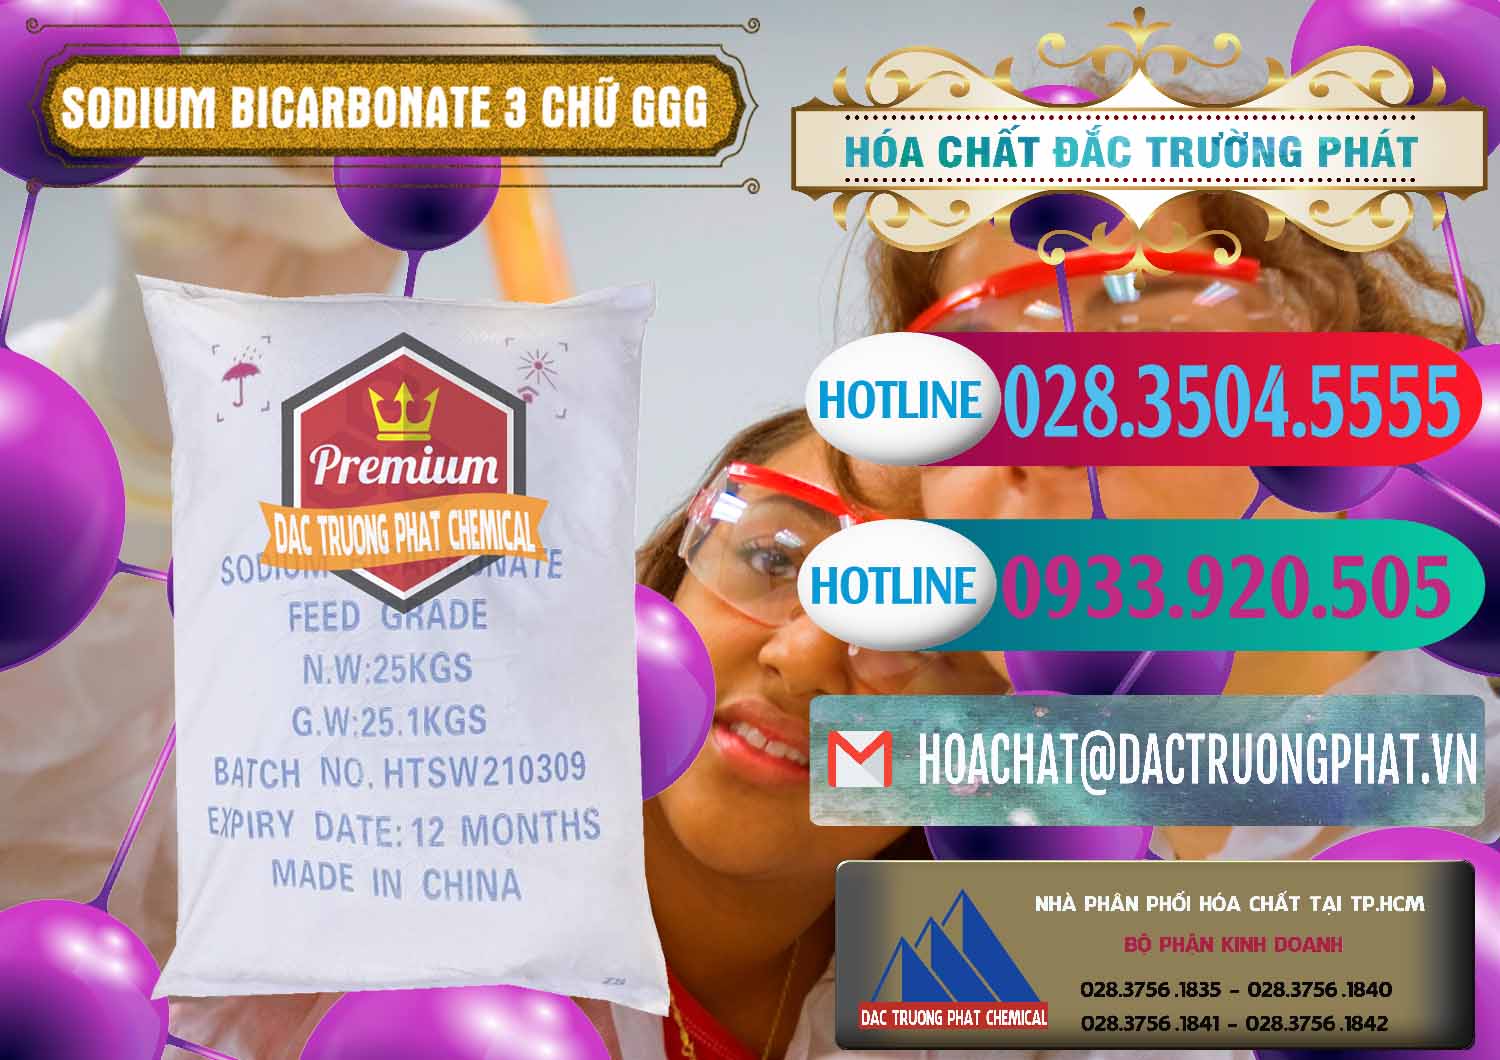 Nhập khẩu - bán Sodium Bicarbonate – Bicar NaHCO3 Food Grade 3 Chữ GGG Trung Quốc China - 0259 - Nhà phân phối - kinh doanh hóa chất tại TP.HCM - truongphat.vn